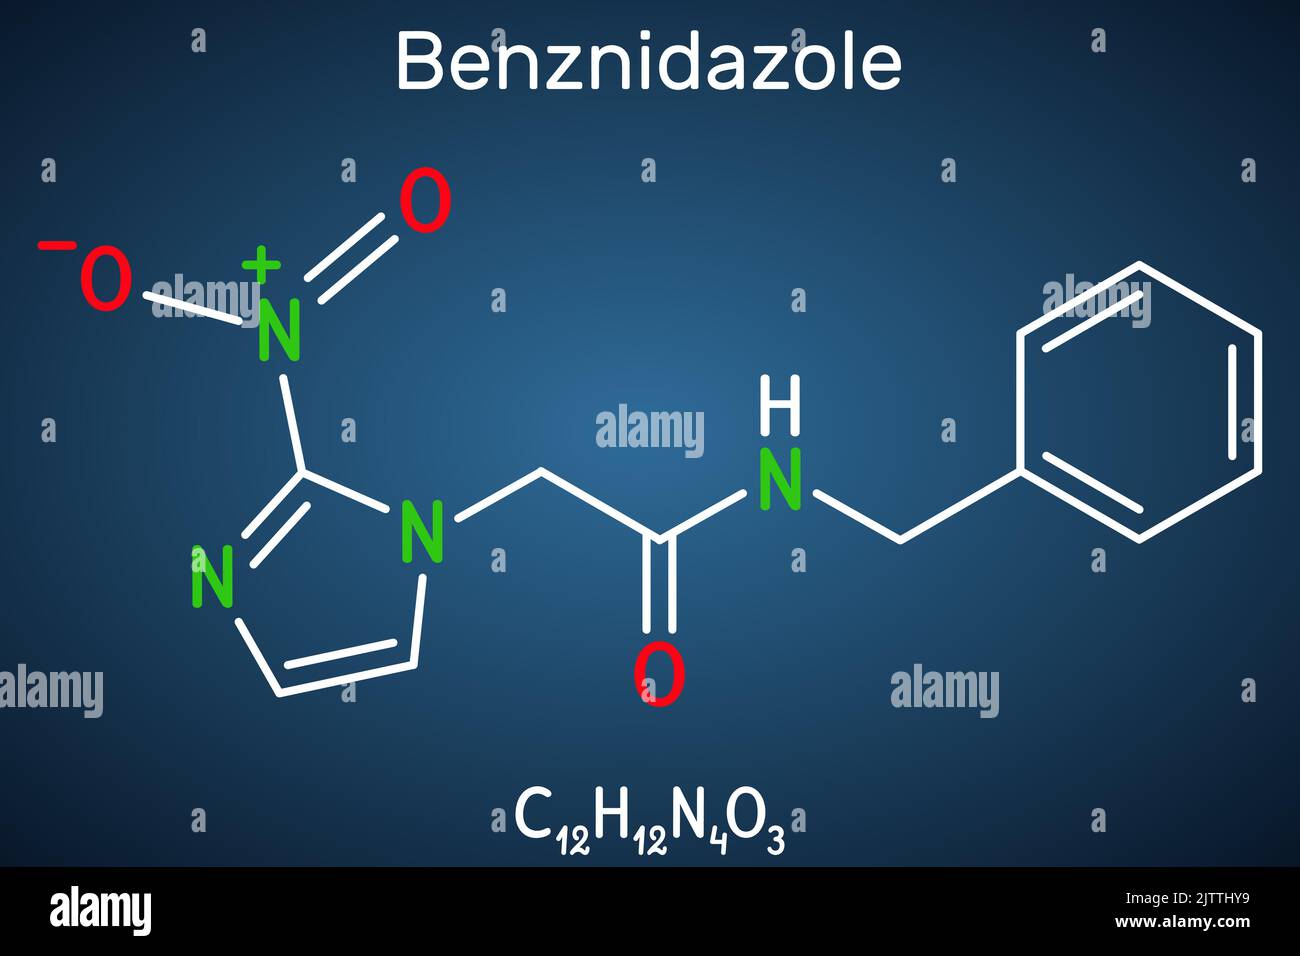 Molécule de benznidazole. Il s'agit d'un médicament antiparasite utilisé dans le traitement de la maladie de Chagas. Formule chimique structurelle sur fond bleu foncé. Vect Illustration de Vecteur